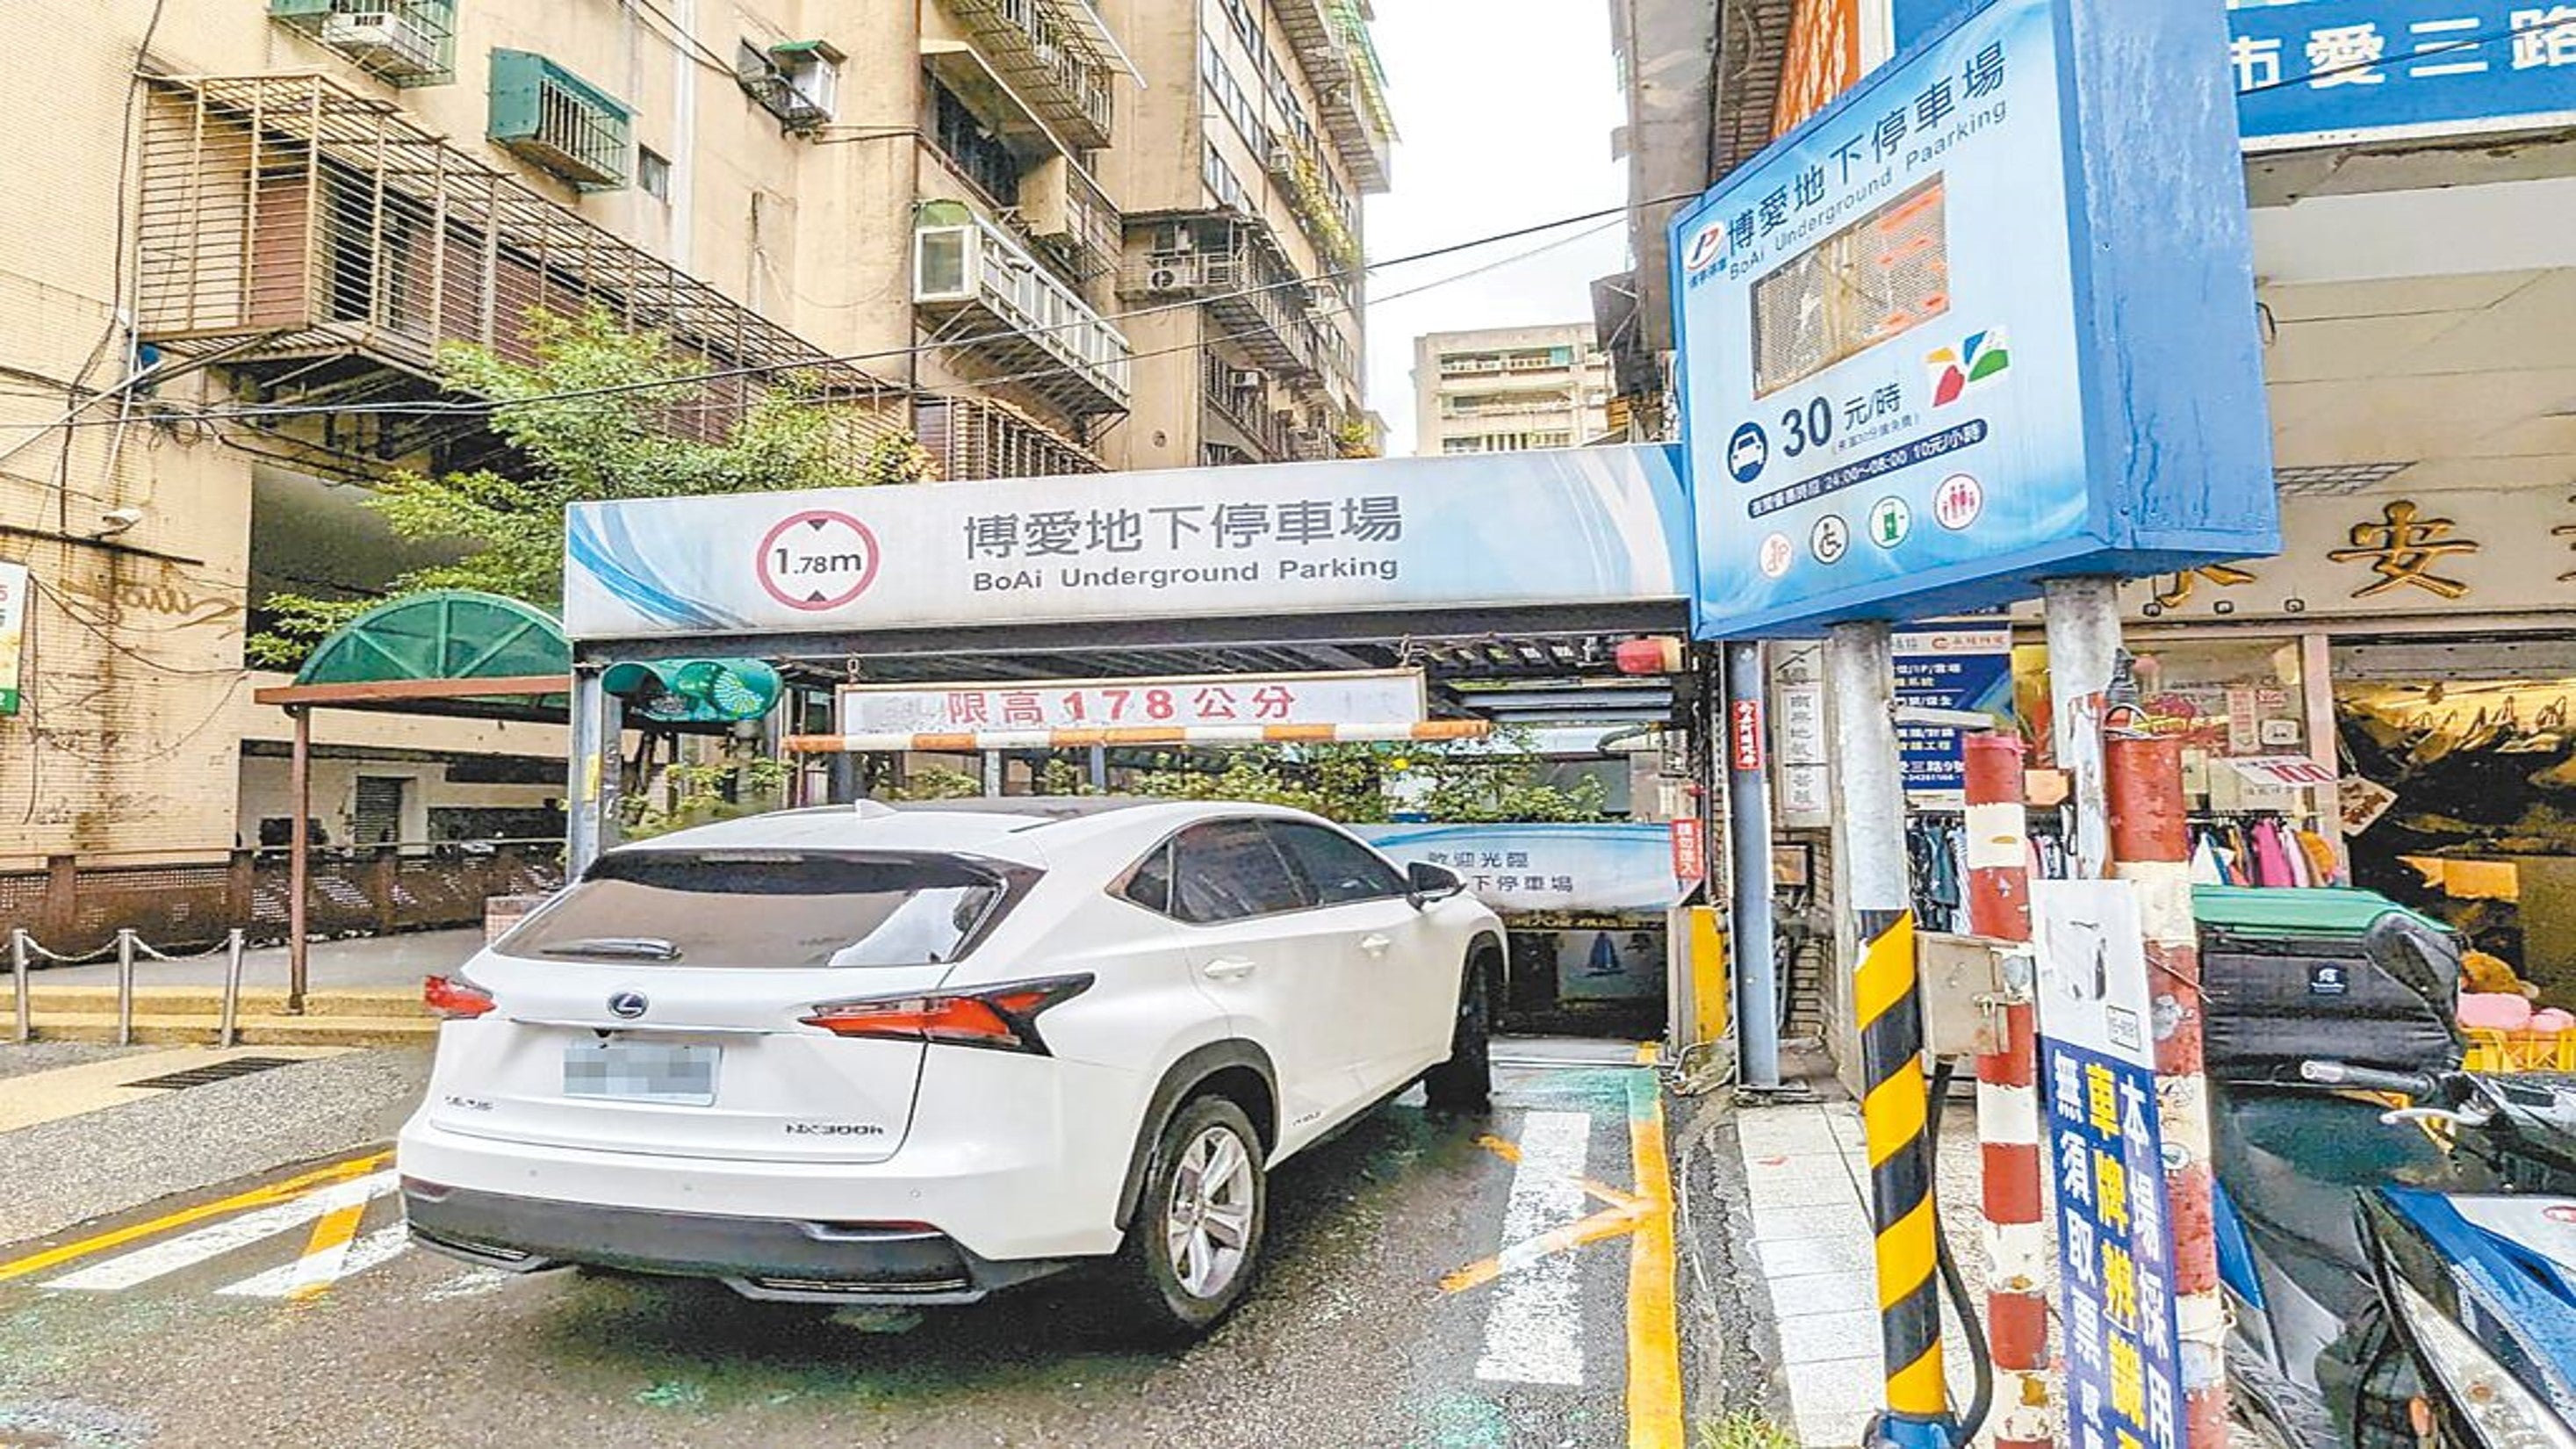 中國時報-基隆博愛停車場翻修 明年4月前開放